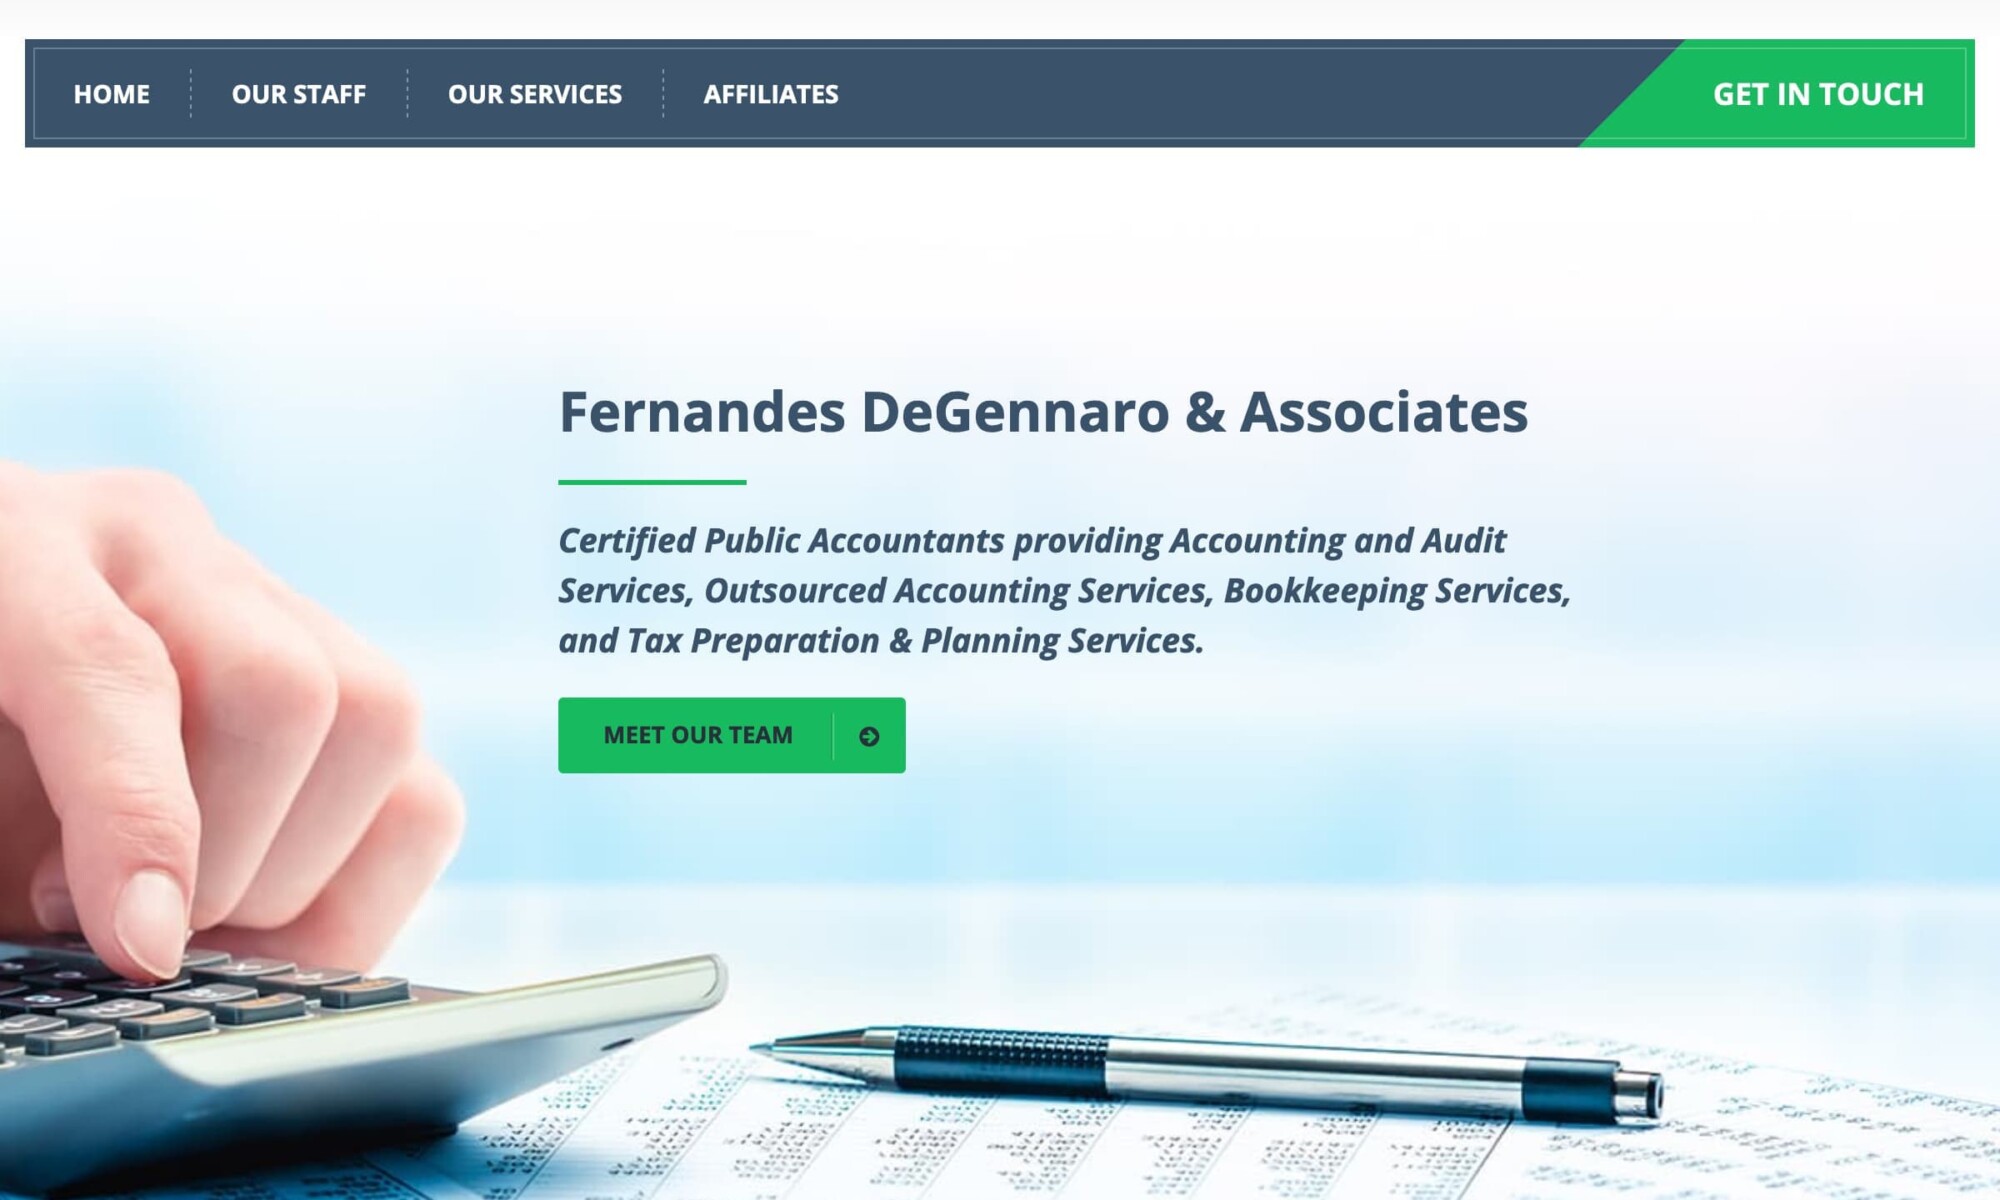 Fernandes DeGennaro & Associates